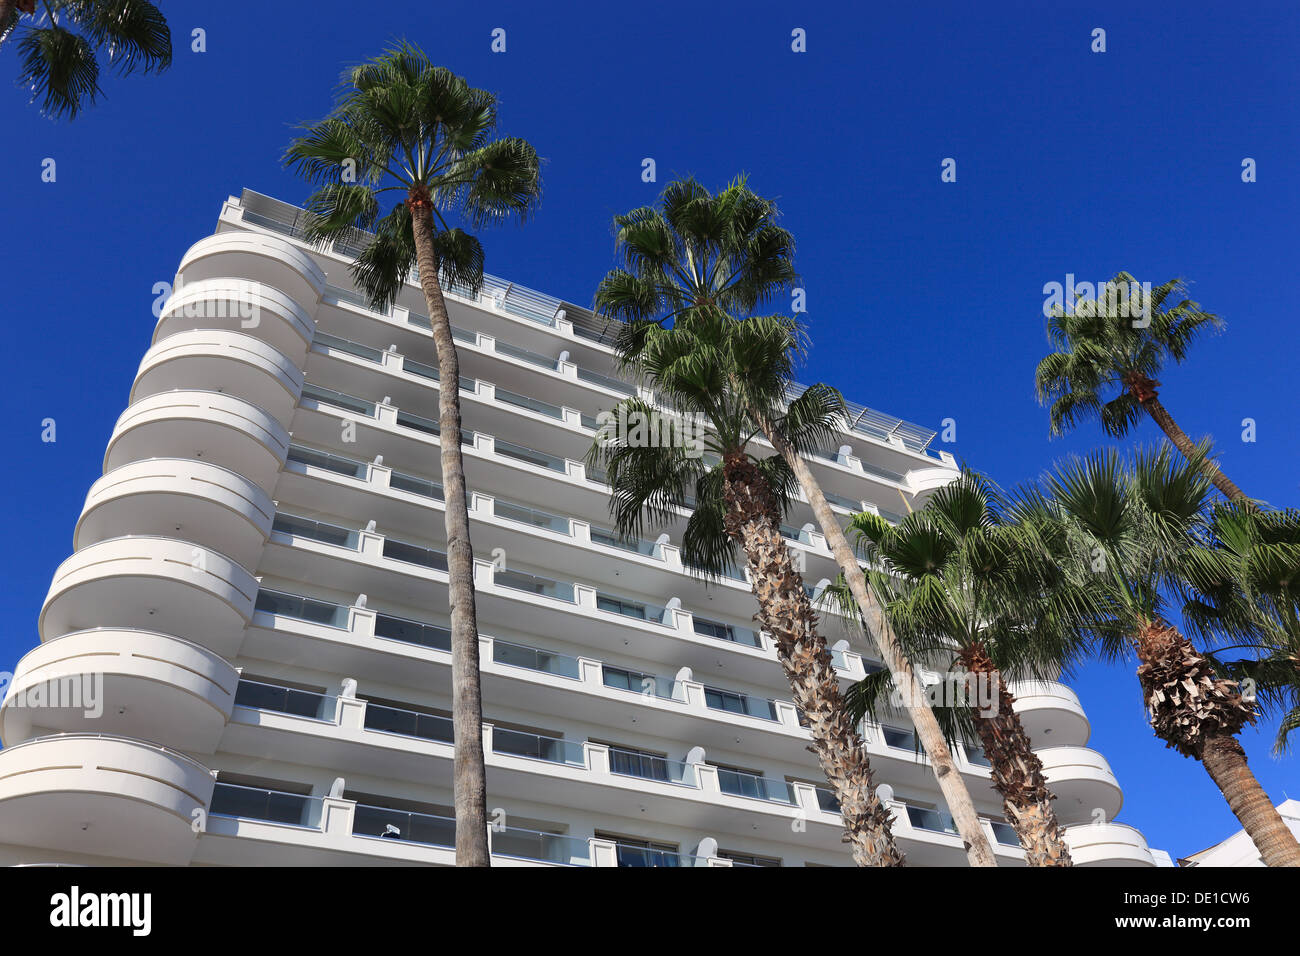 Chypre, Larnaca, l'hôtel, des immeubles résidentiels, des palmiers Banque D'Images